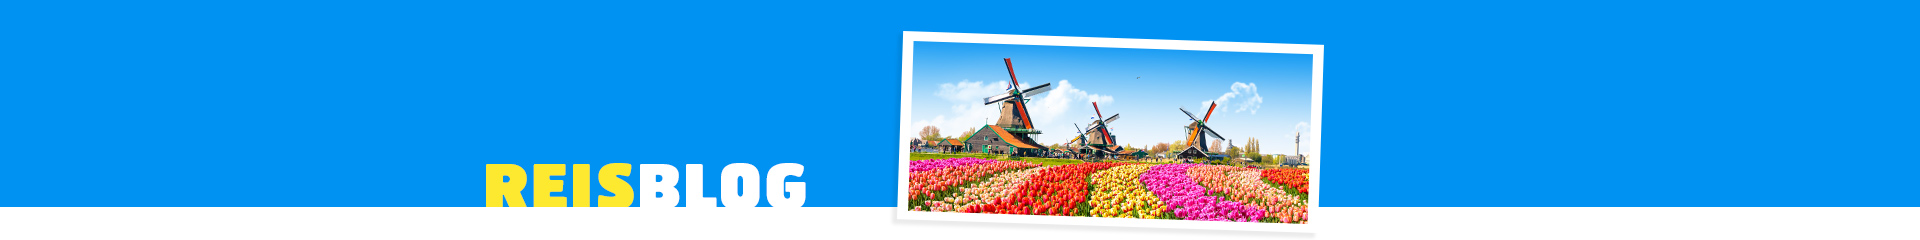 Tulpenvelden met molens in Zuid-Holland